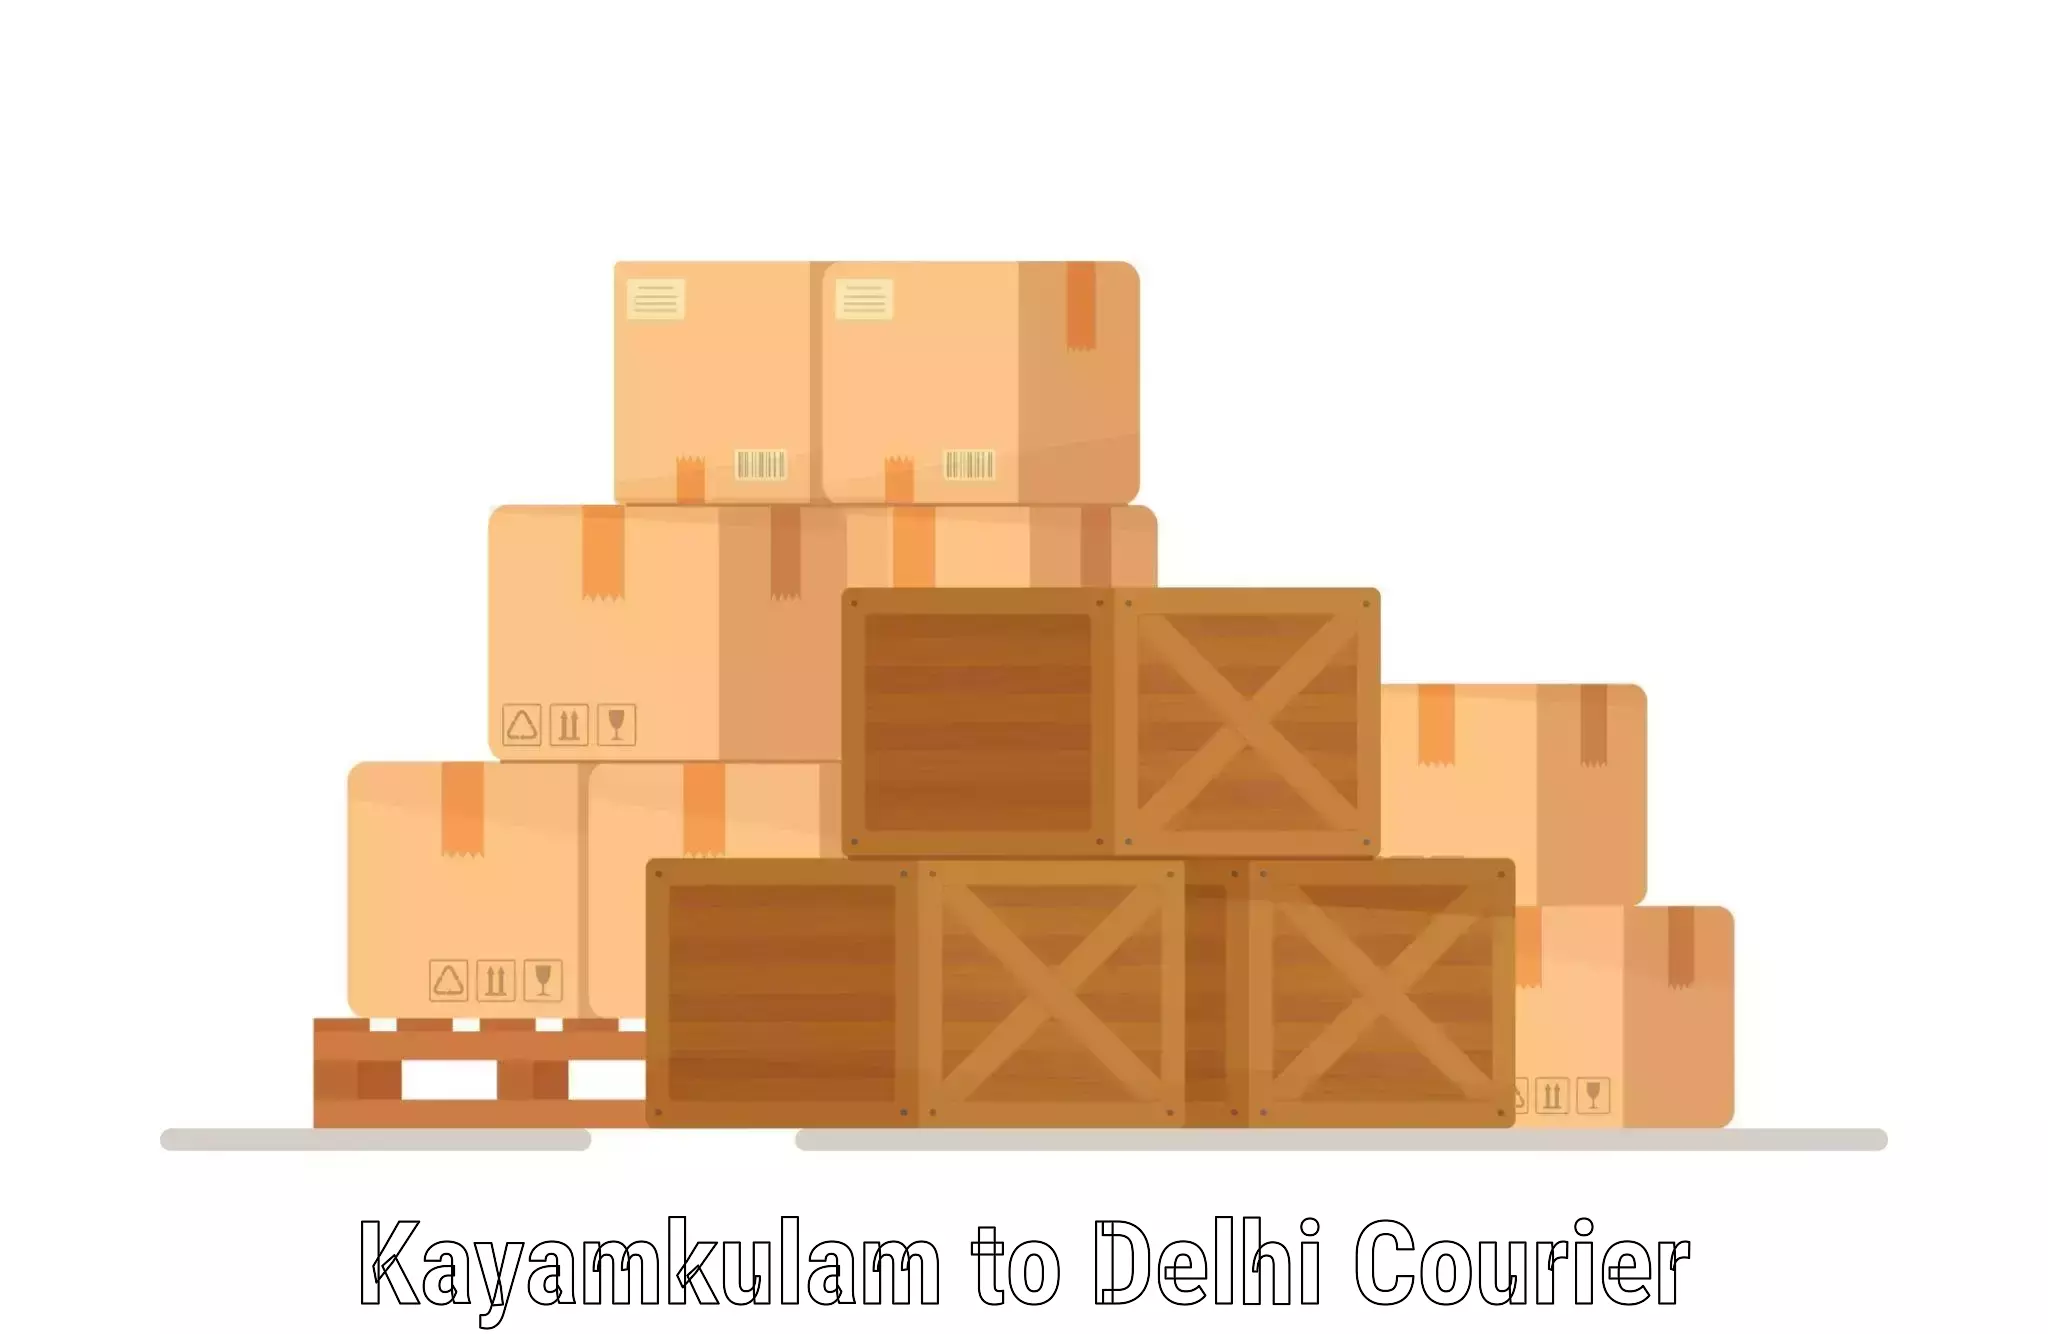 Ground shipping Kayamkulam to Jawaharlal Nehru University New Delhi